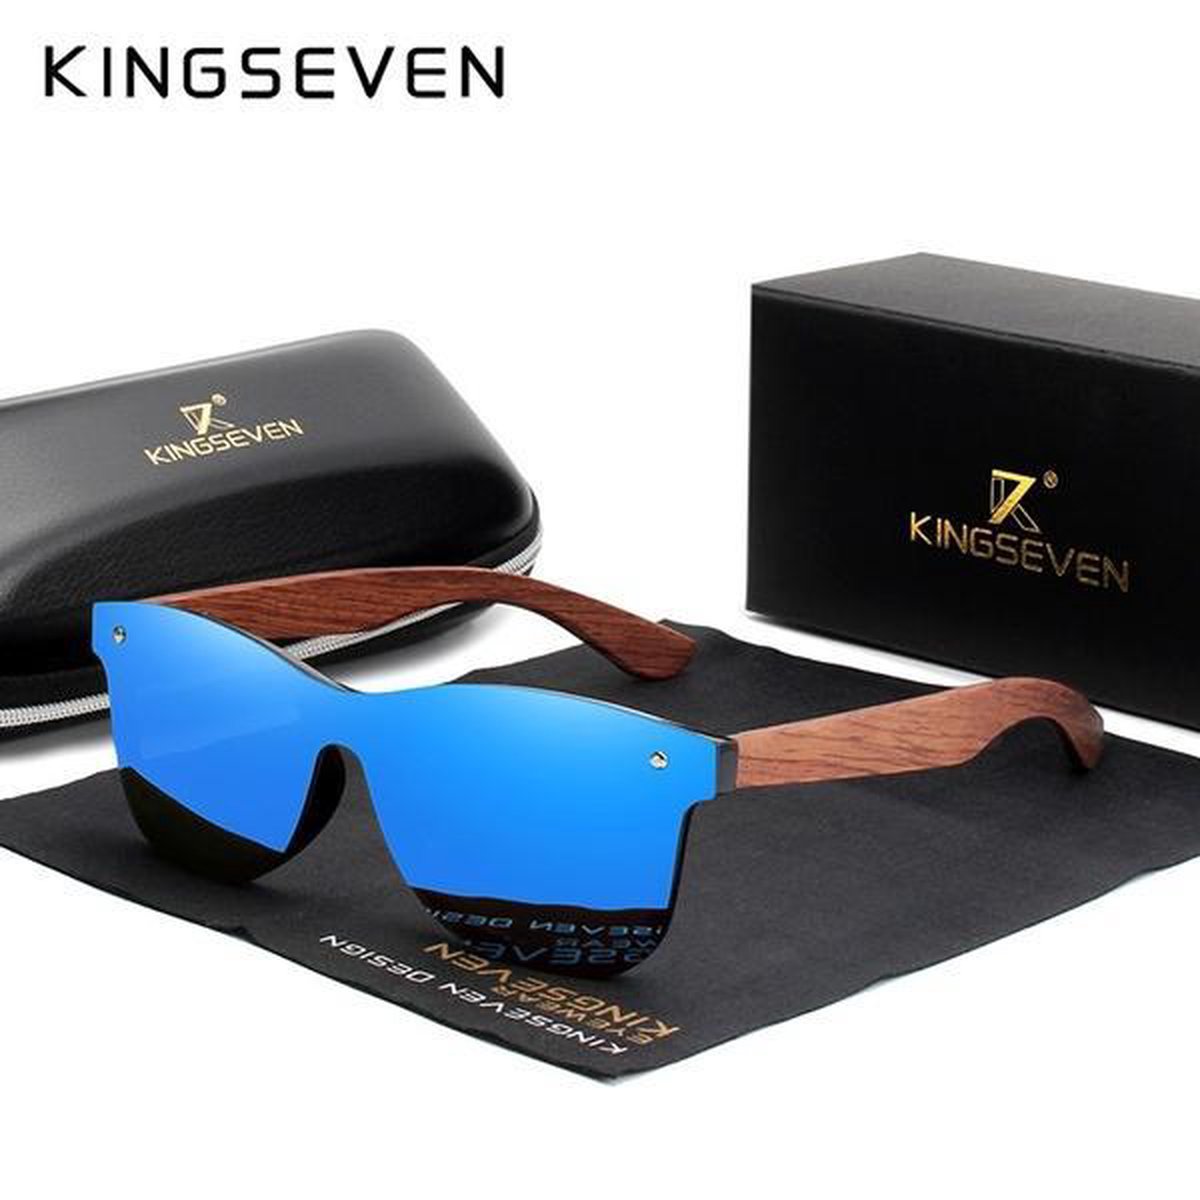 KingSeven Zonnebril Heren - Bamboe - Blauw - Polarisatie Filter - UV400 - KINGSEVEN K7